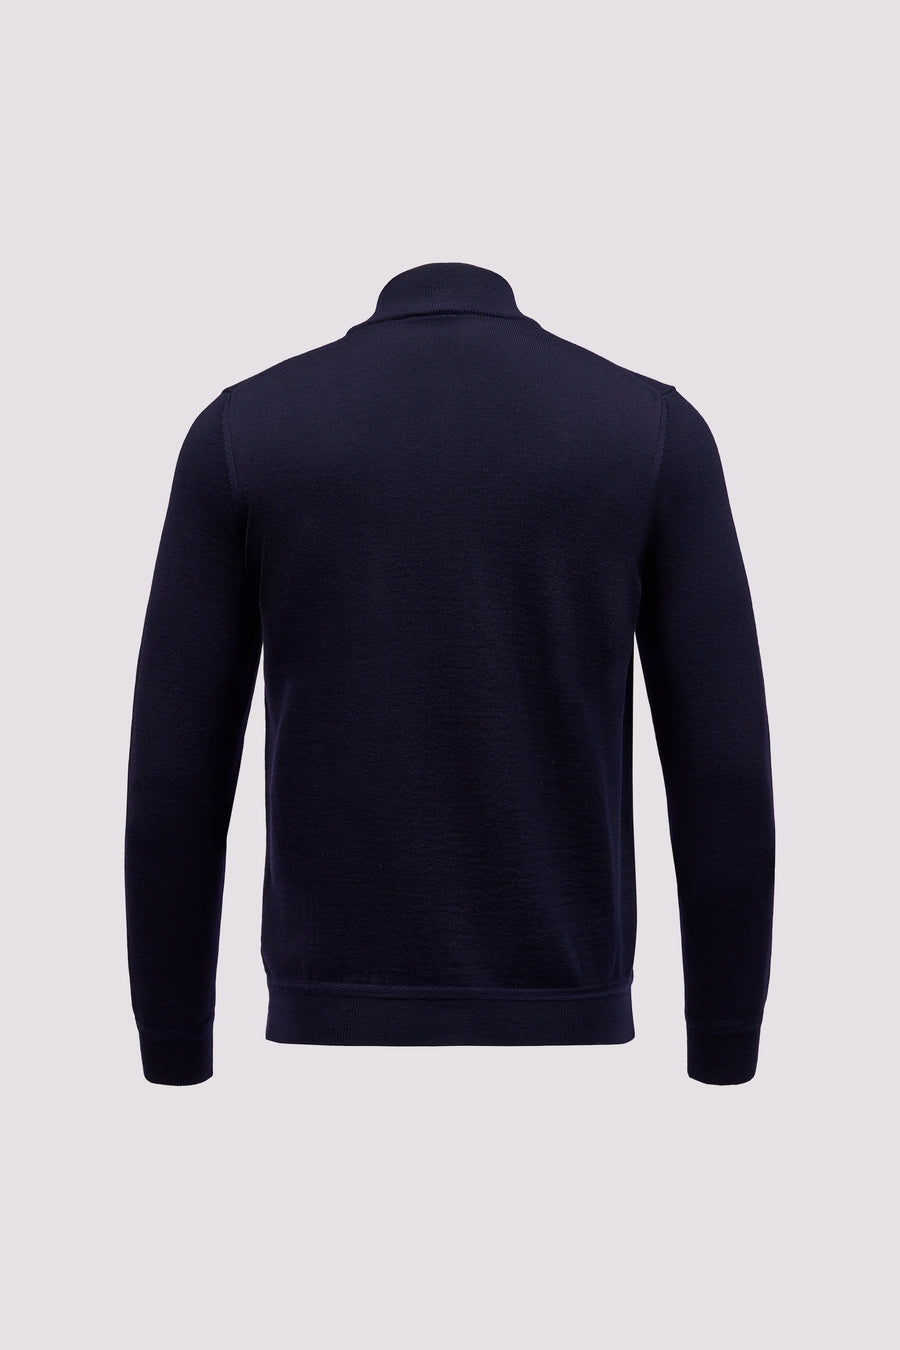 Merino Wool 1/4 Zip Funnel Neck Sweater Dark Navy